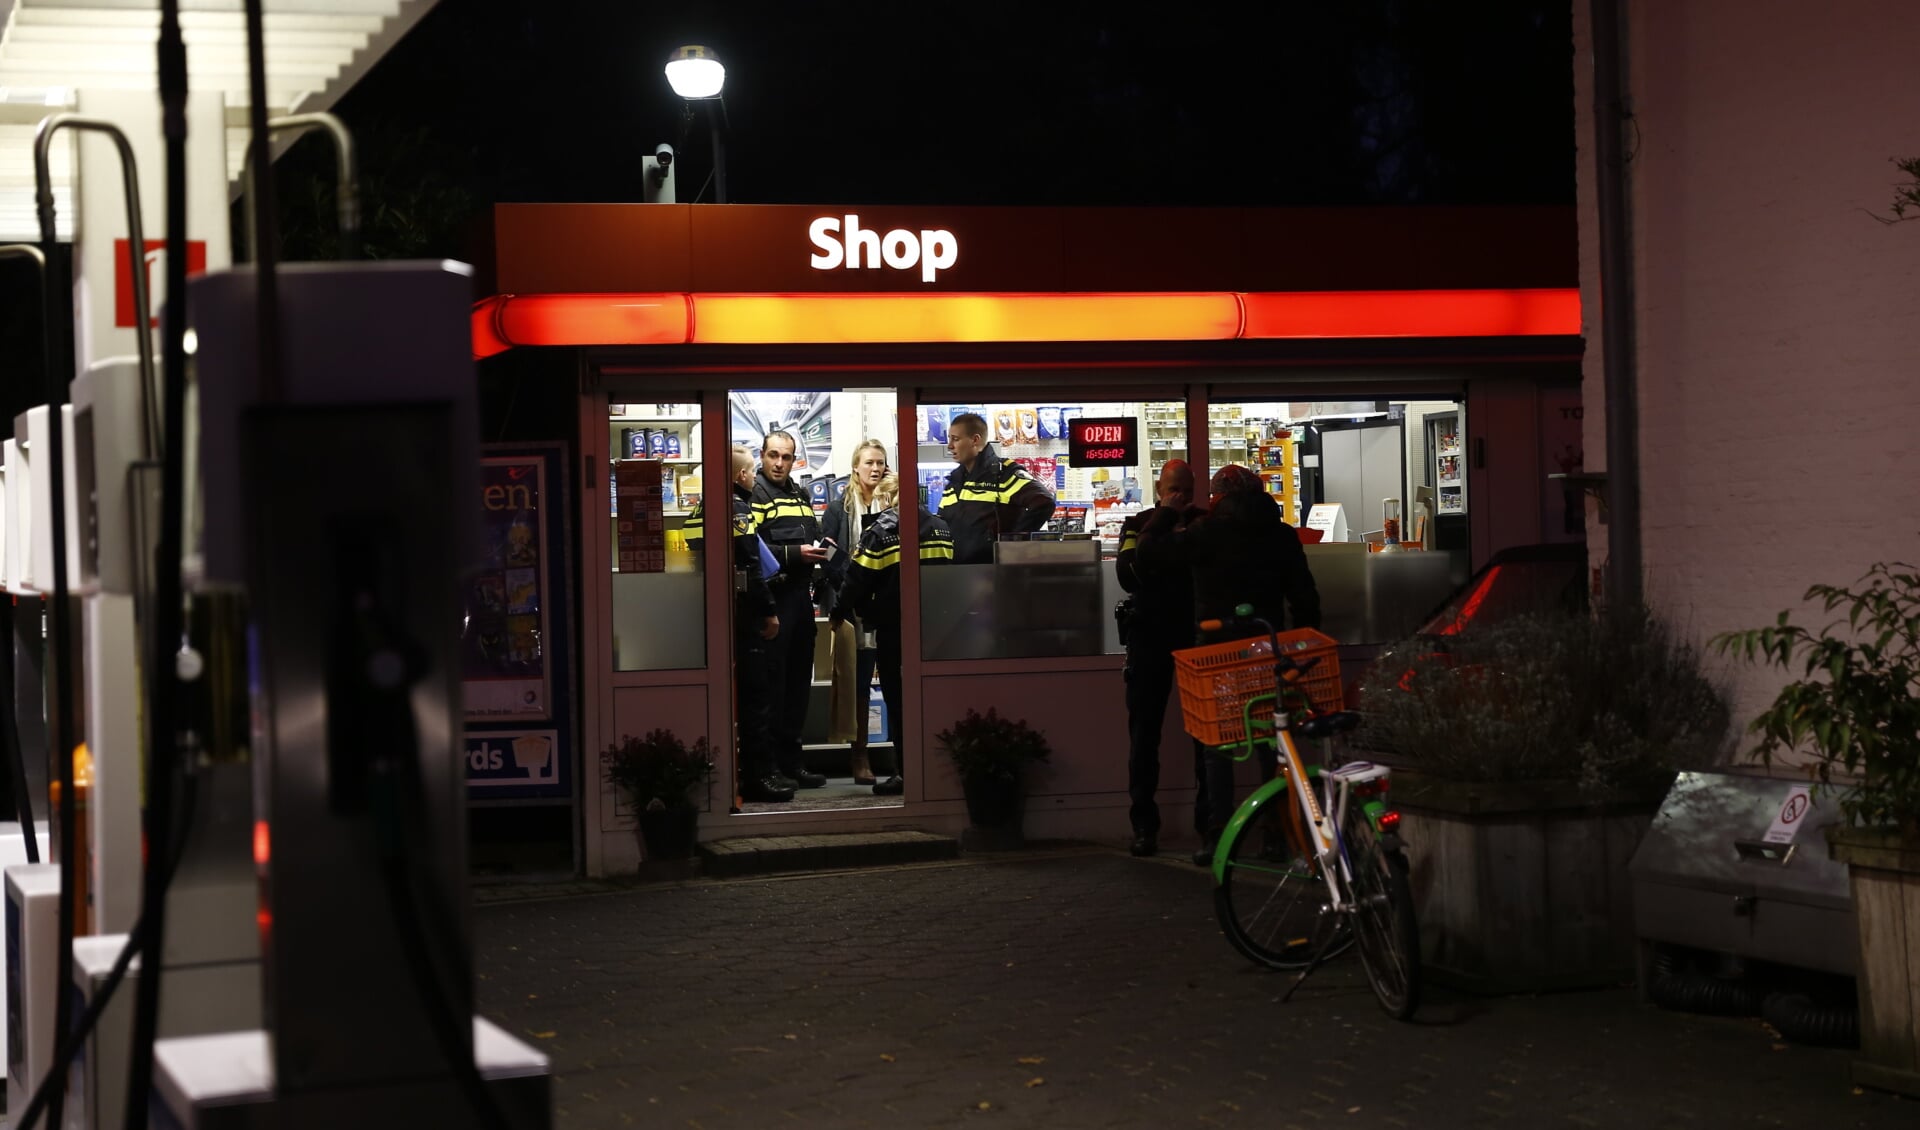 Het Total-tankstation aan 't Zand in Cuijk werd donderdag overvallen. (foto: SK-Media)